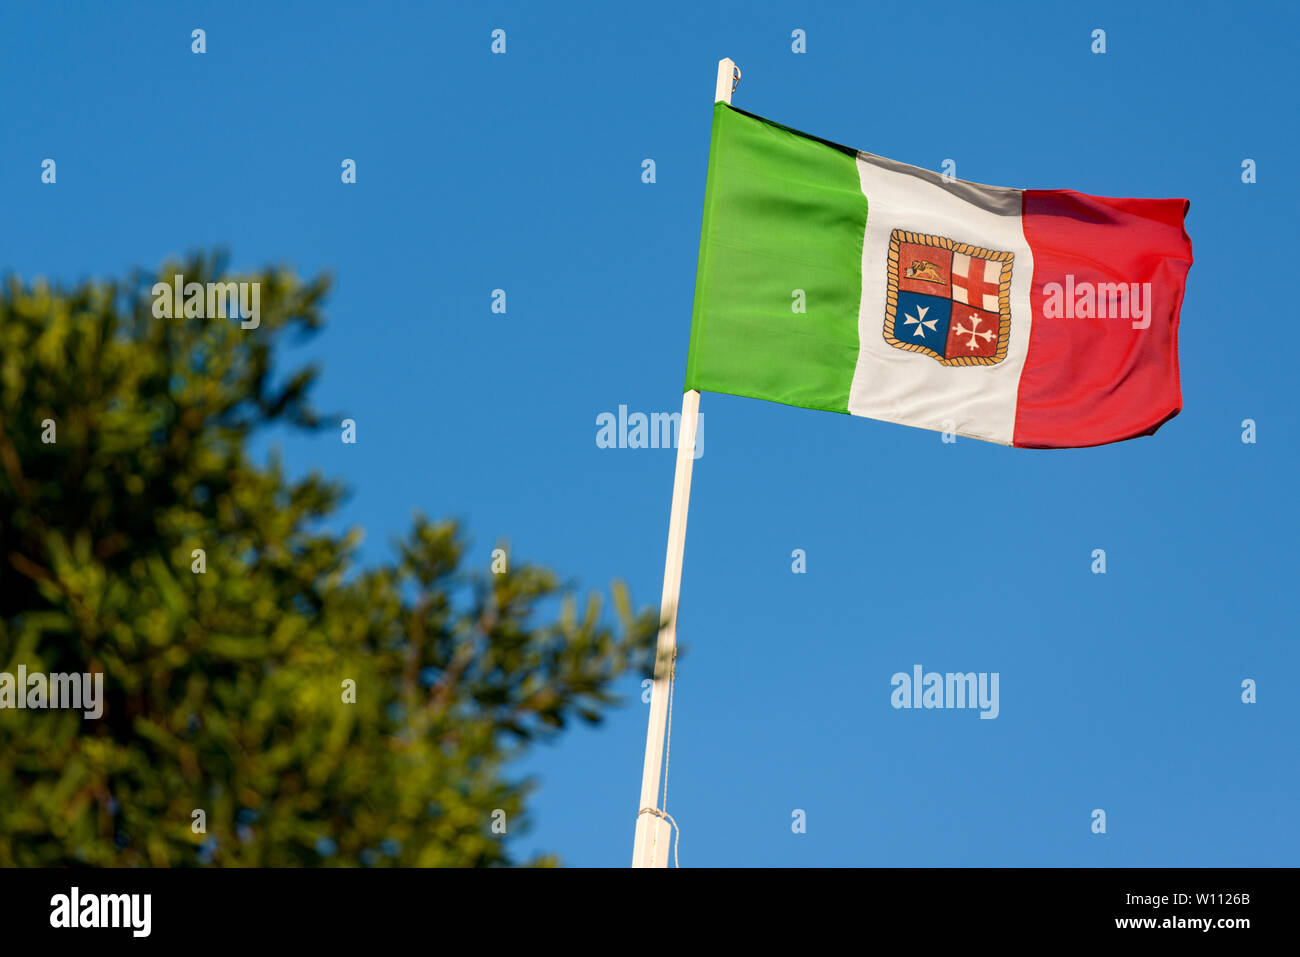 Bandiera Italiana con stemma delle quattro Repubbliche Marinare, Venezia, Genova, Pisa e Amalfi, su un cielo blu Foto Stock